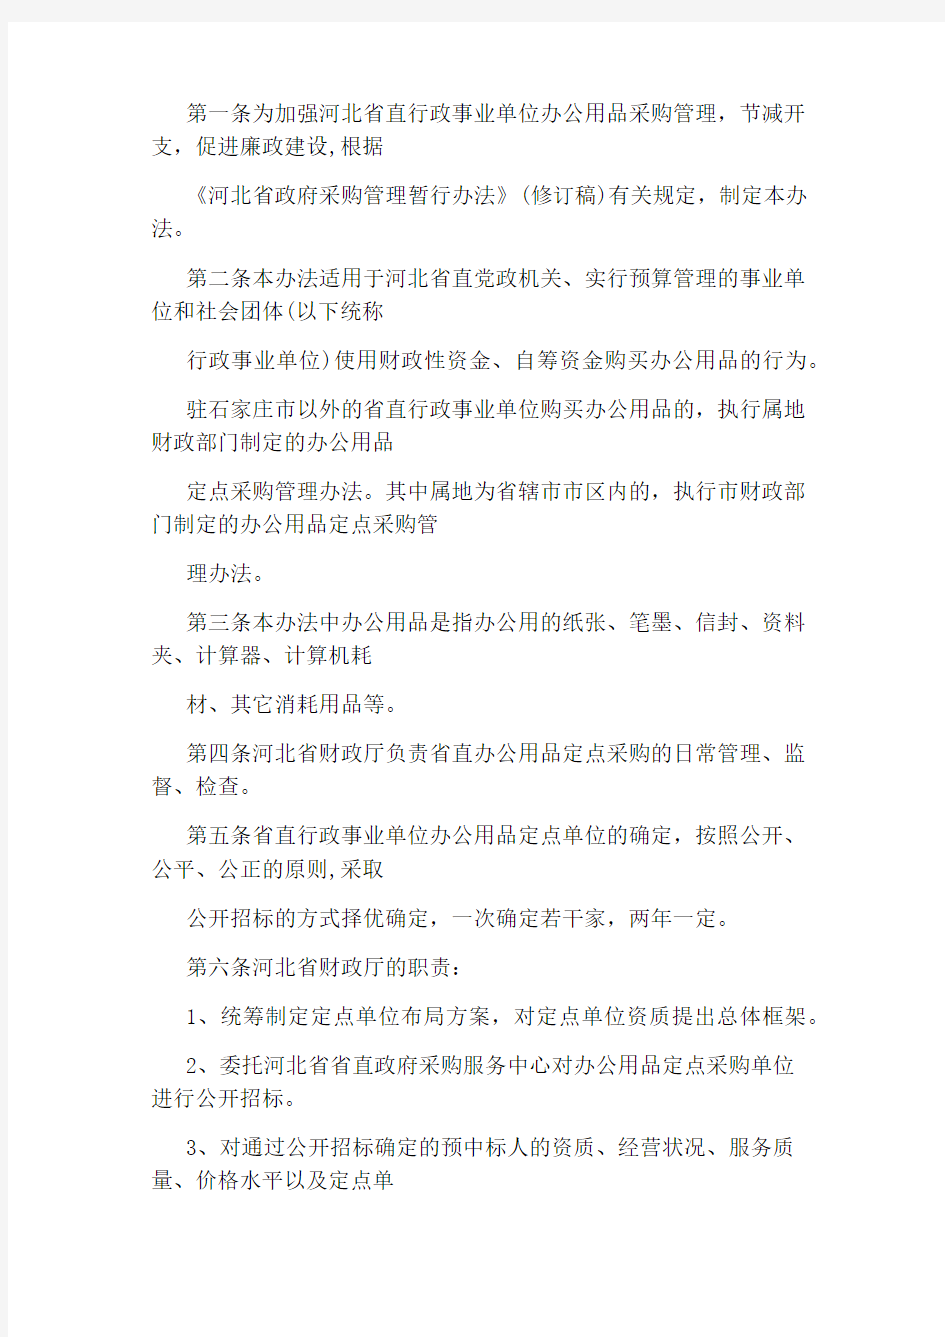 河北省省直行政事业单位办公用品定点采购管理暂行办法